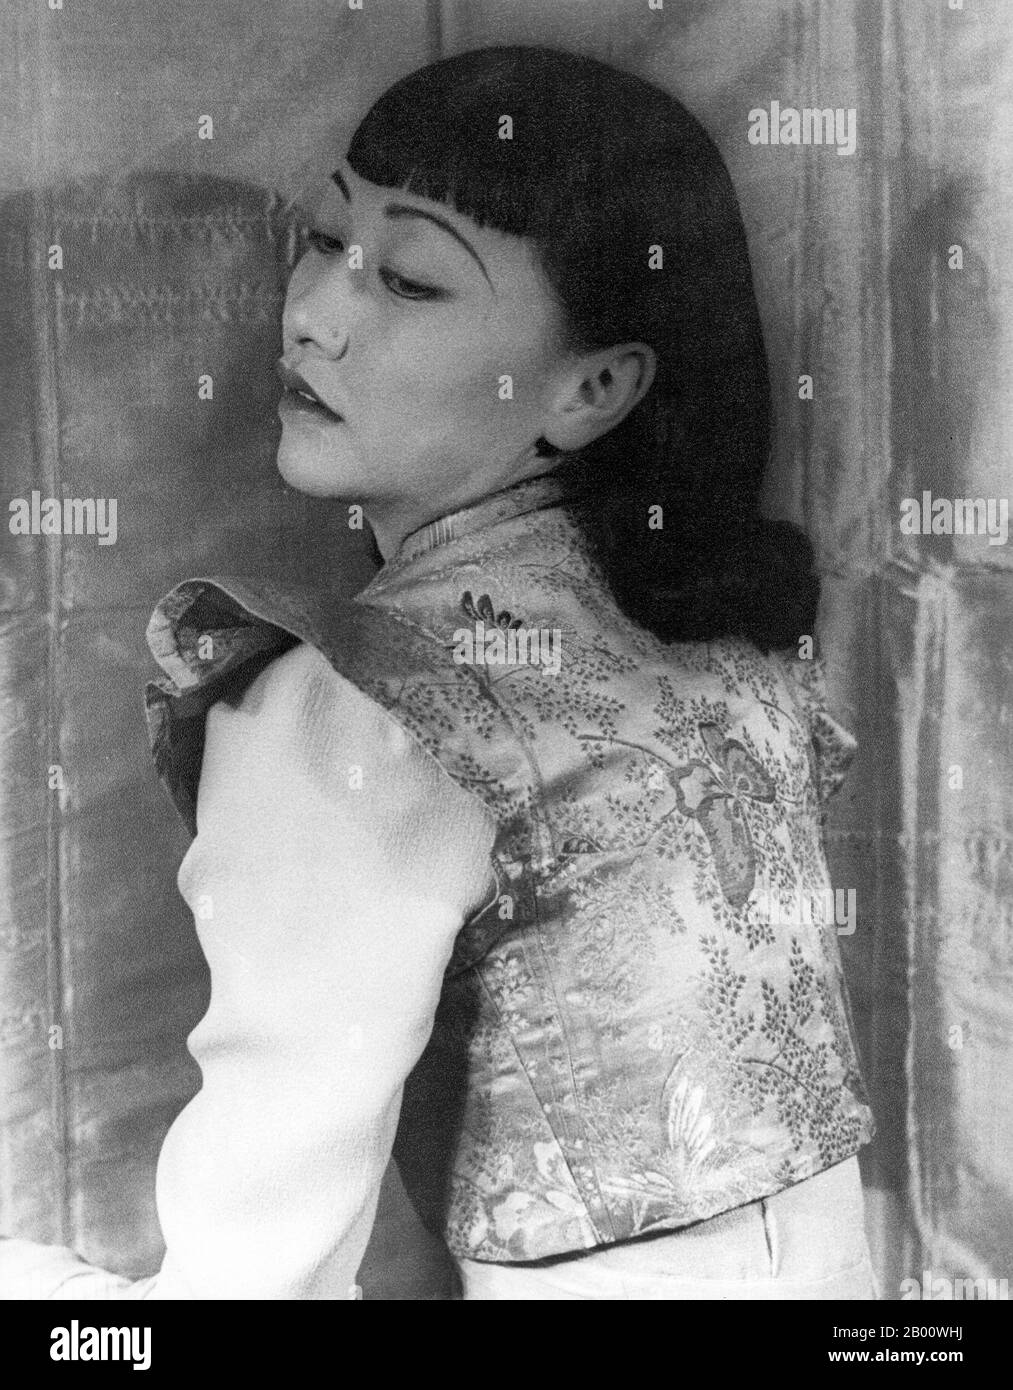 USA: Anna May Wong photographiée par Carl Van Vechten (1880-1964), 25 avril 1939. Anna May Wong (3 janvier 1905 – 3 février 1961) est une actrice américaine, la première star chinoise du cinéma américain et la première asiatique américaine à devenir une star internationale. Sa longue et variée carrière s'est étendue à la fois au cinéma silencieux et au son, à la télévision, à la scène et à la radio. Banque D'Images